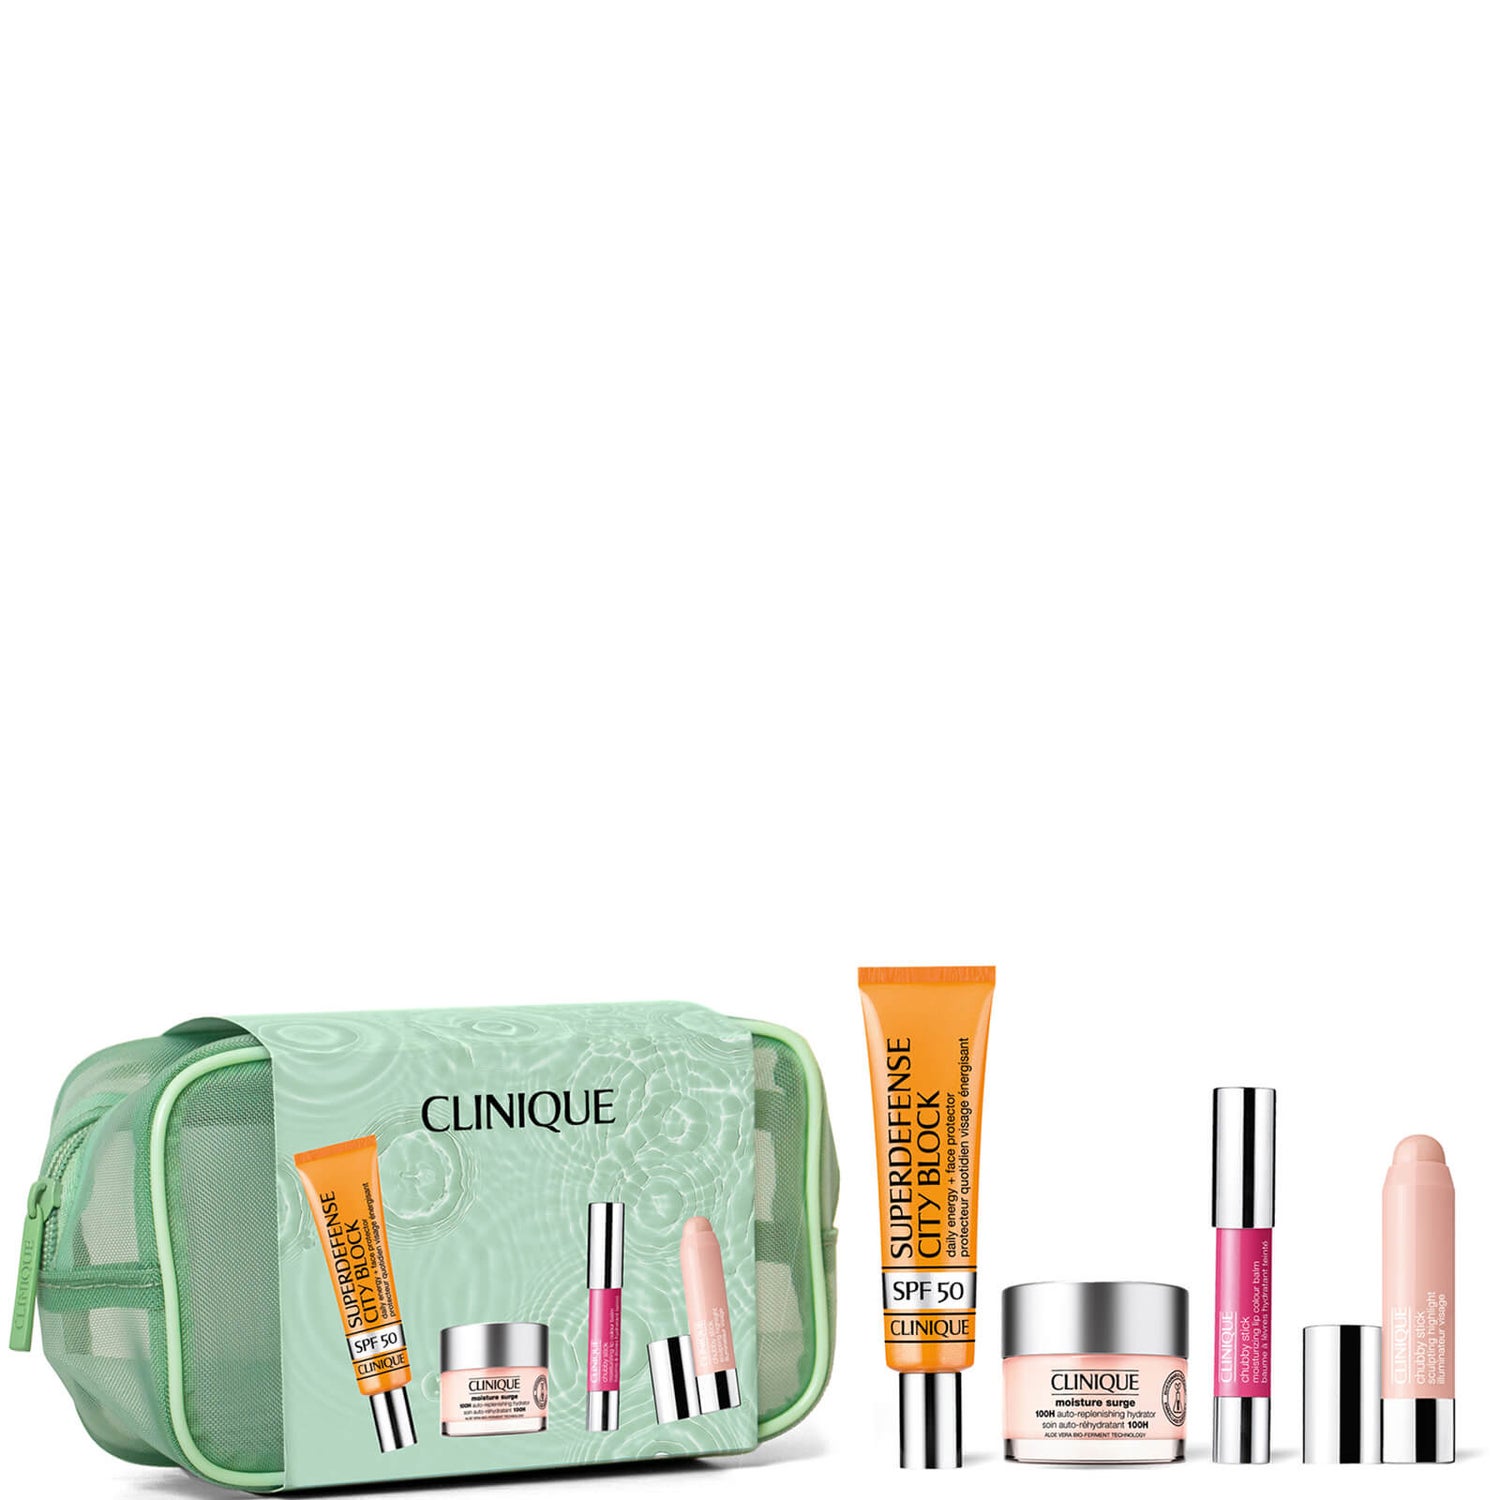 Details 71+ clinique makeup gift set latest